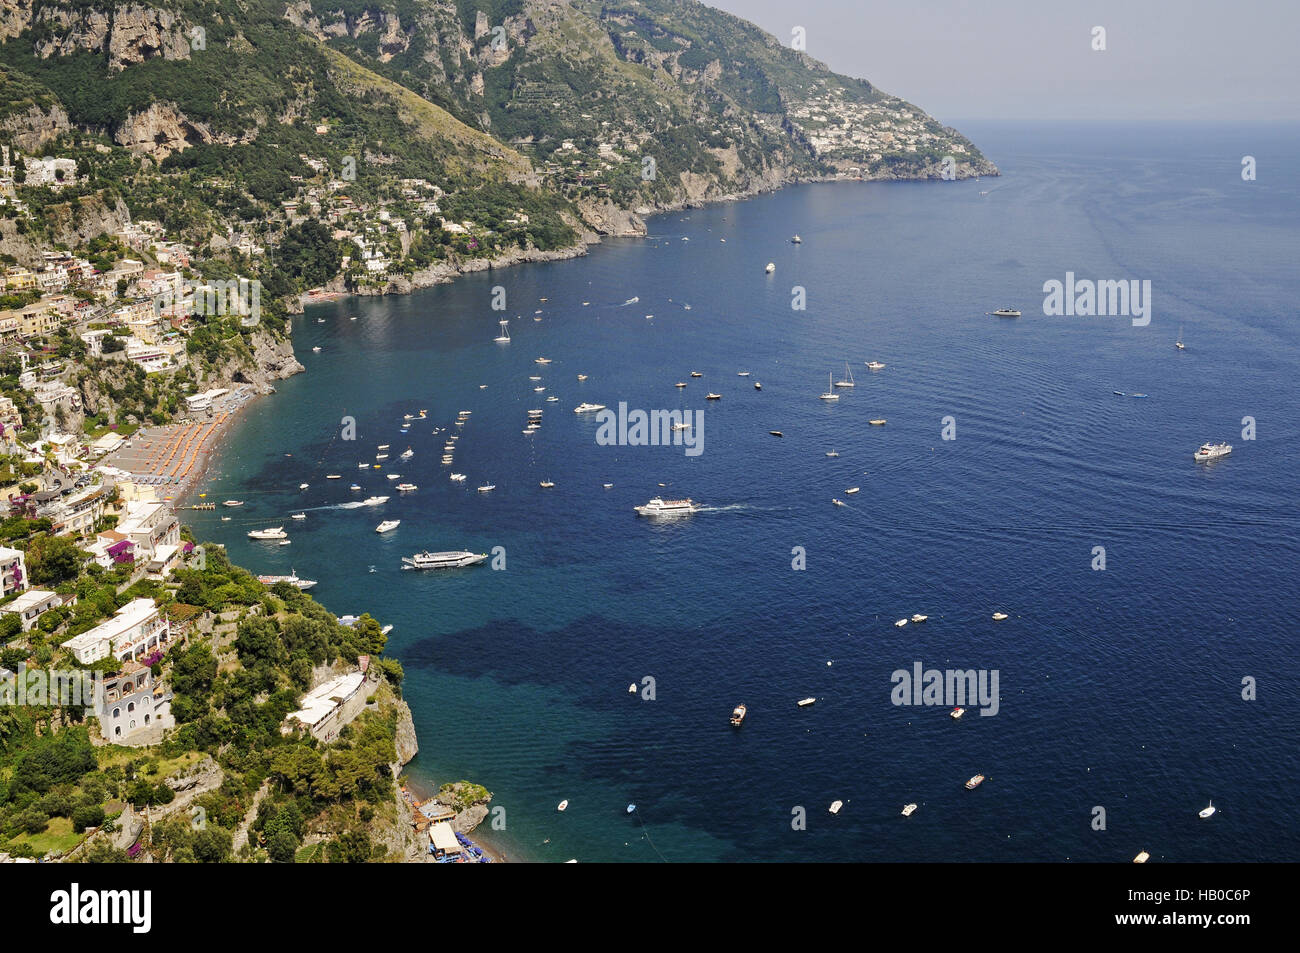 Positano, Amalfi Coast, Italy Stock Photo